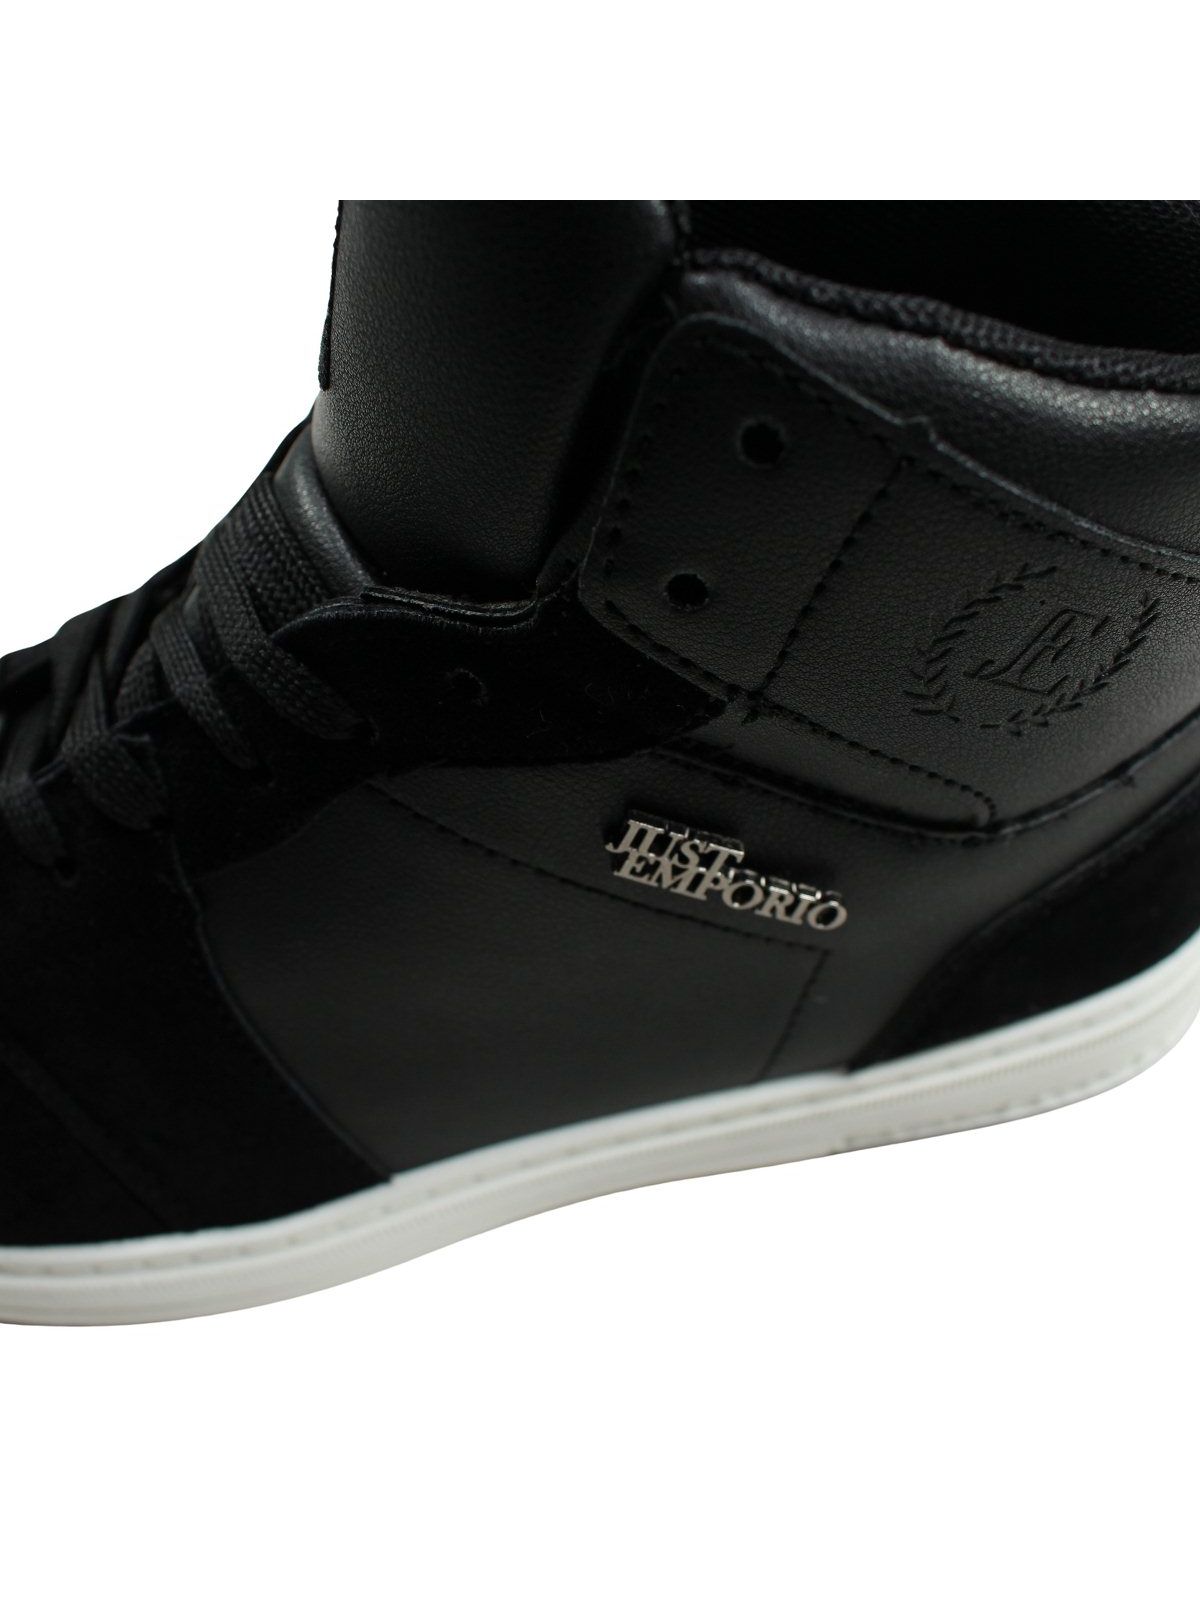 Just Emporio Herren-Sneaker